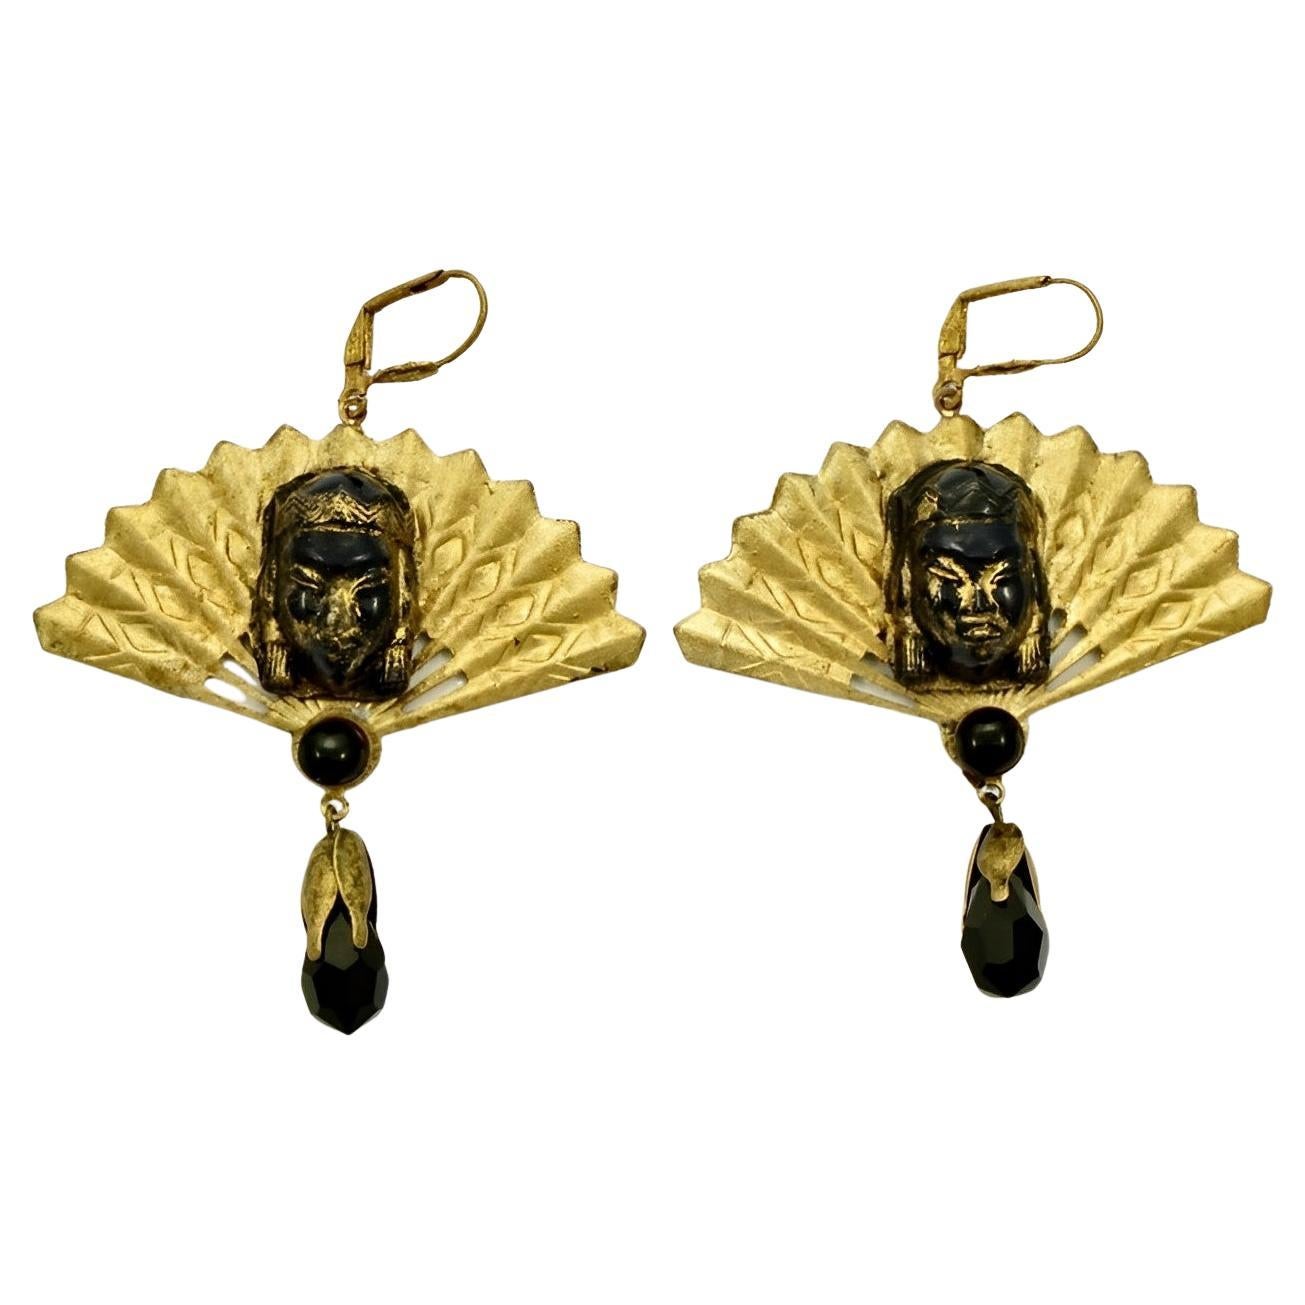 Vergoldete Metall-Ohrringe mit verschnörkeltem schwarzem Glas-Fächerverschluss und schwarzem Glastropfen